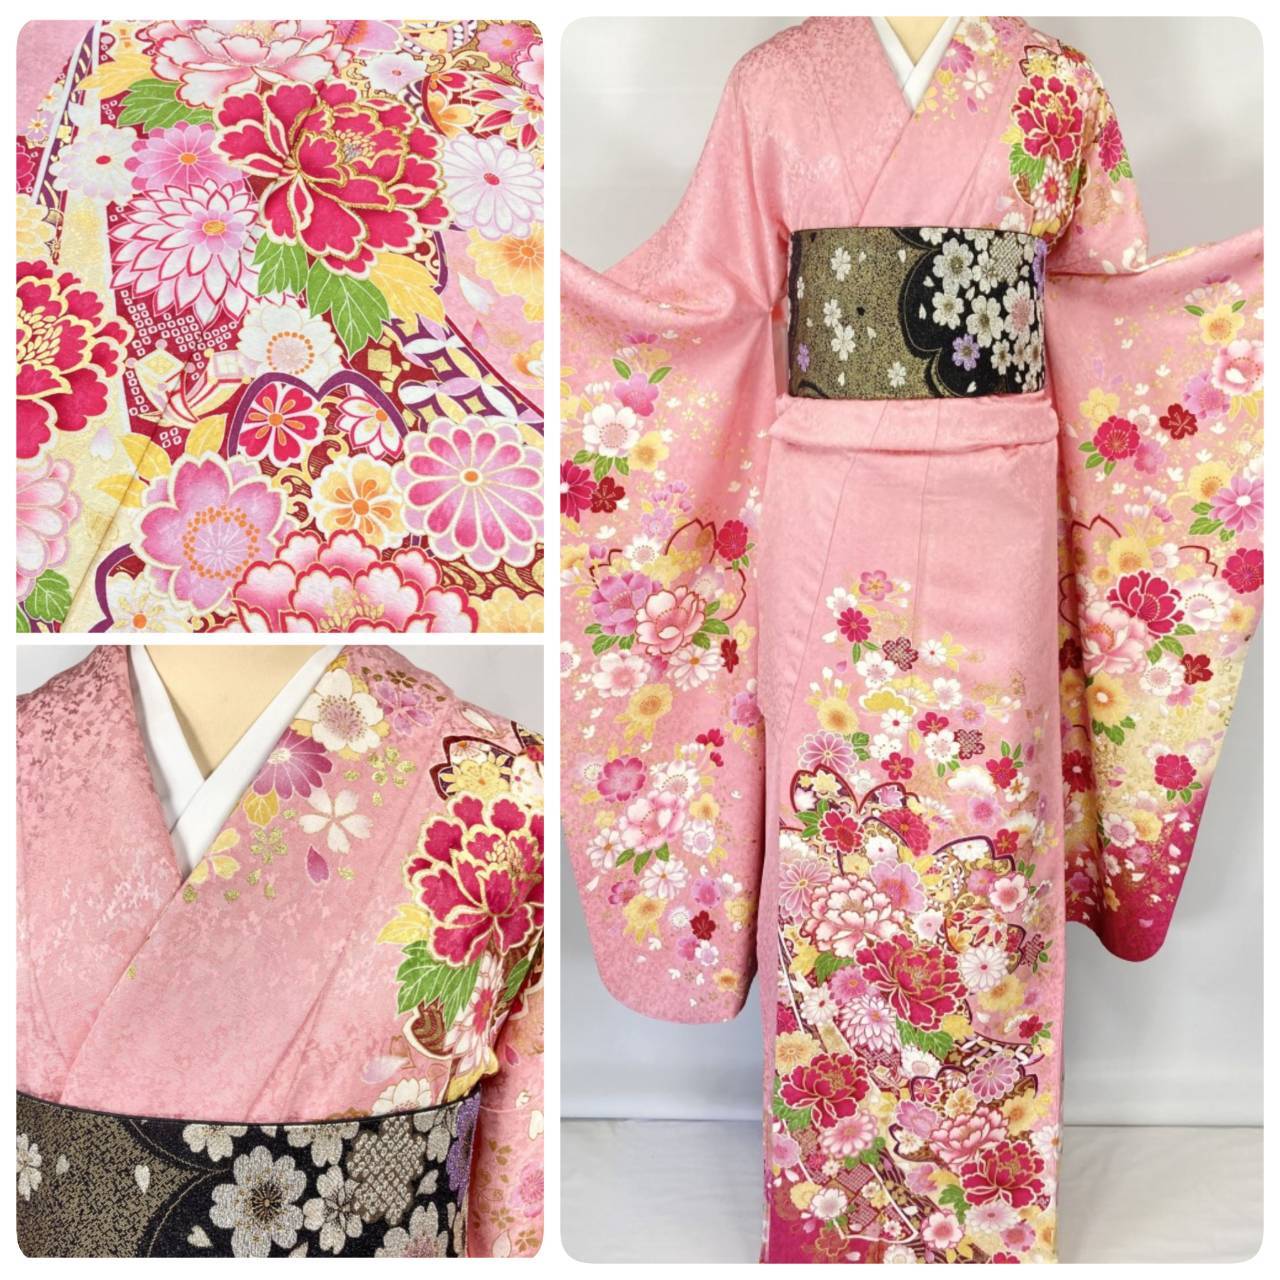 新品未使用正絹振り袖用桜がらの美しい袋帯です裏も桜の織が施されていて素敵です桃李着物帯